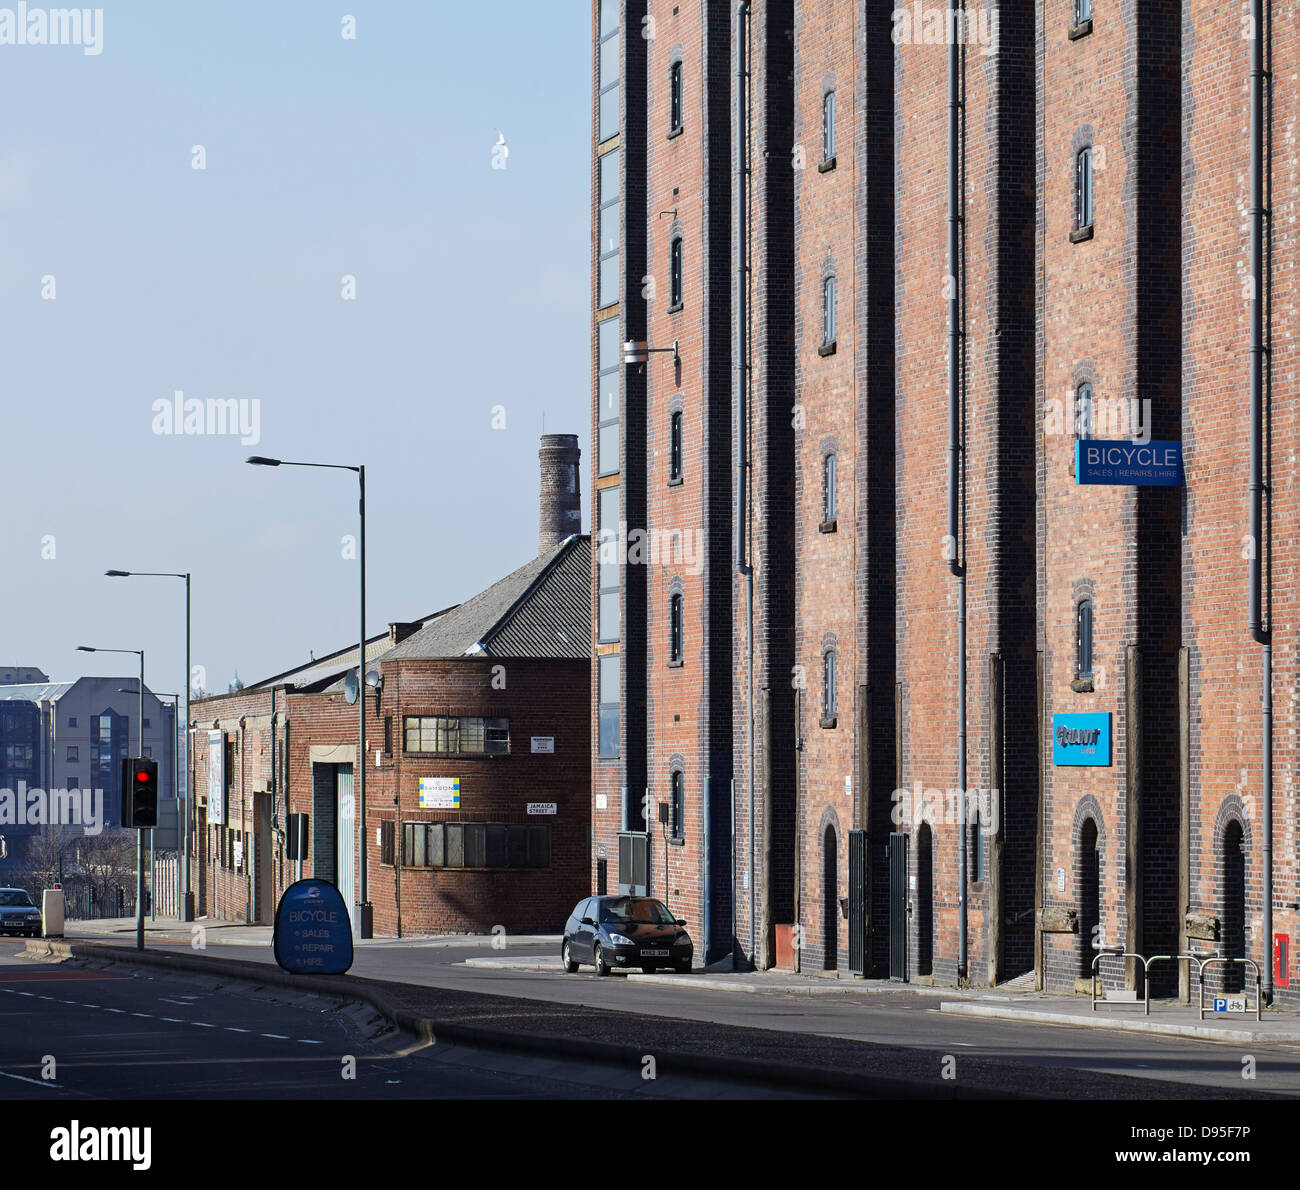 Camp und Ofen, Liverpool, Vereinigtes Königreich. Architekt: FWMA + & lächelnd Wolf, 2012. Straßenansicht der baltischen Dreieck. Stockfoto